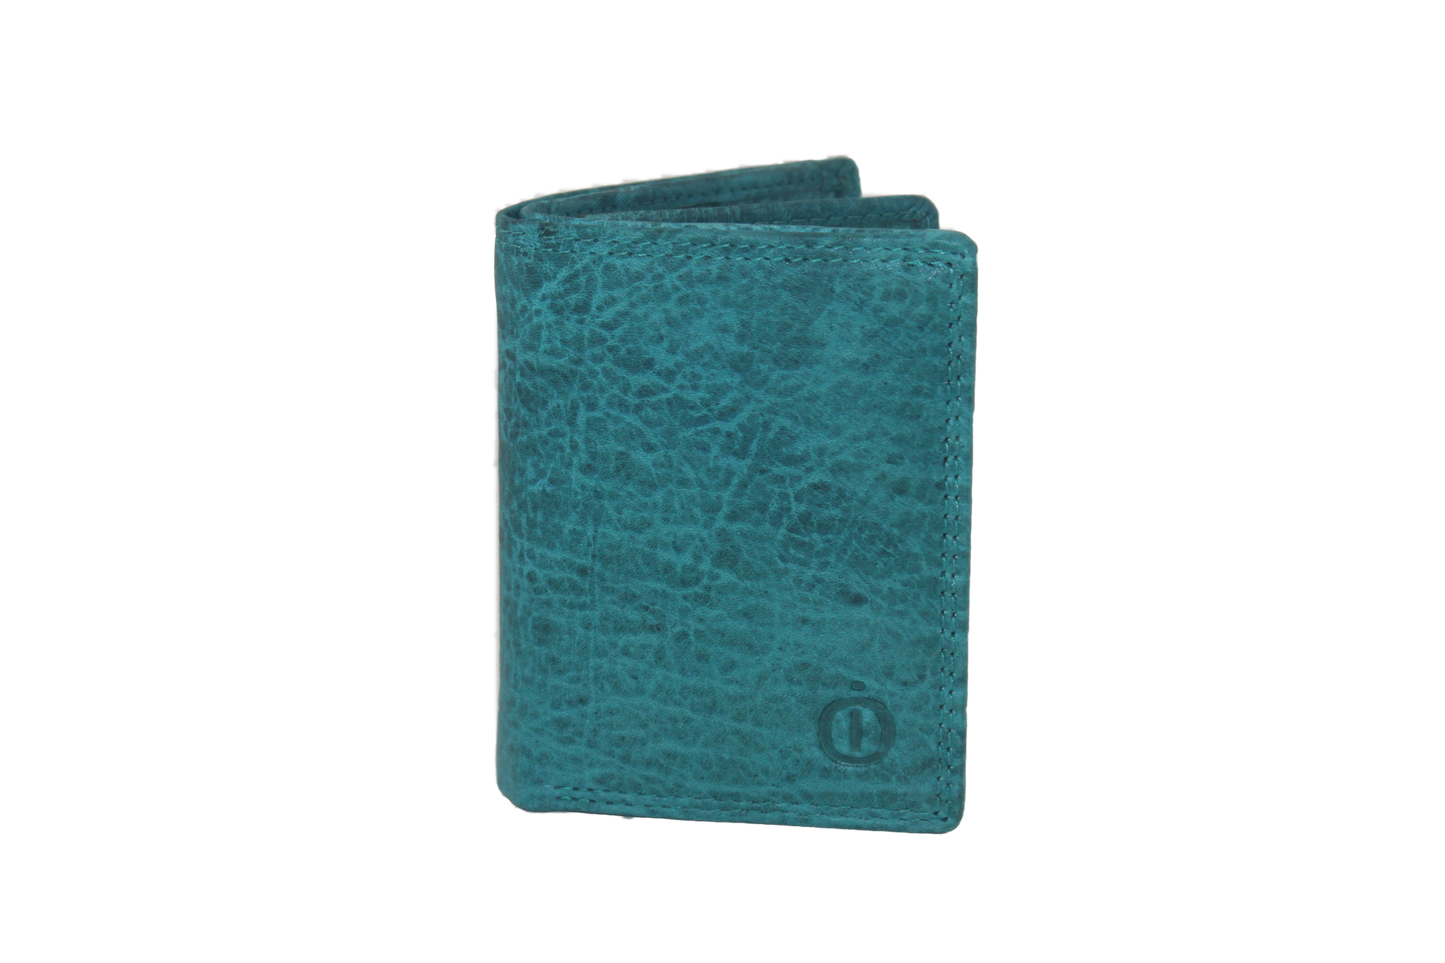 OI creditcard houder / met ruimte voor kleingeld en biljetten. Turquoise